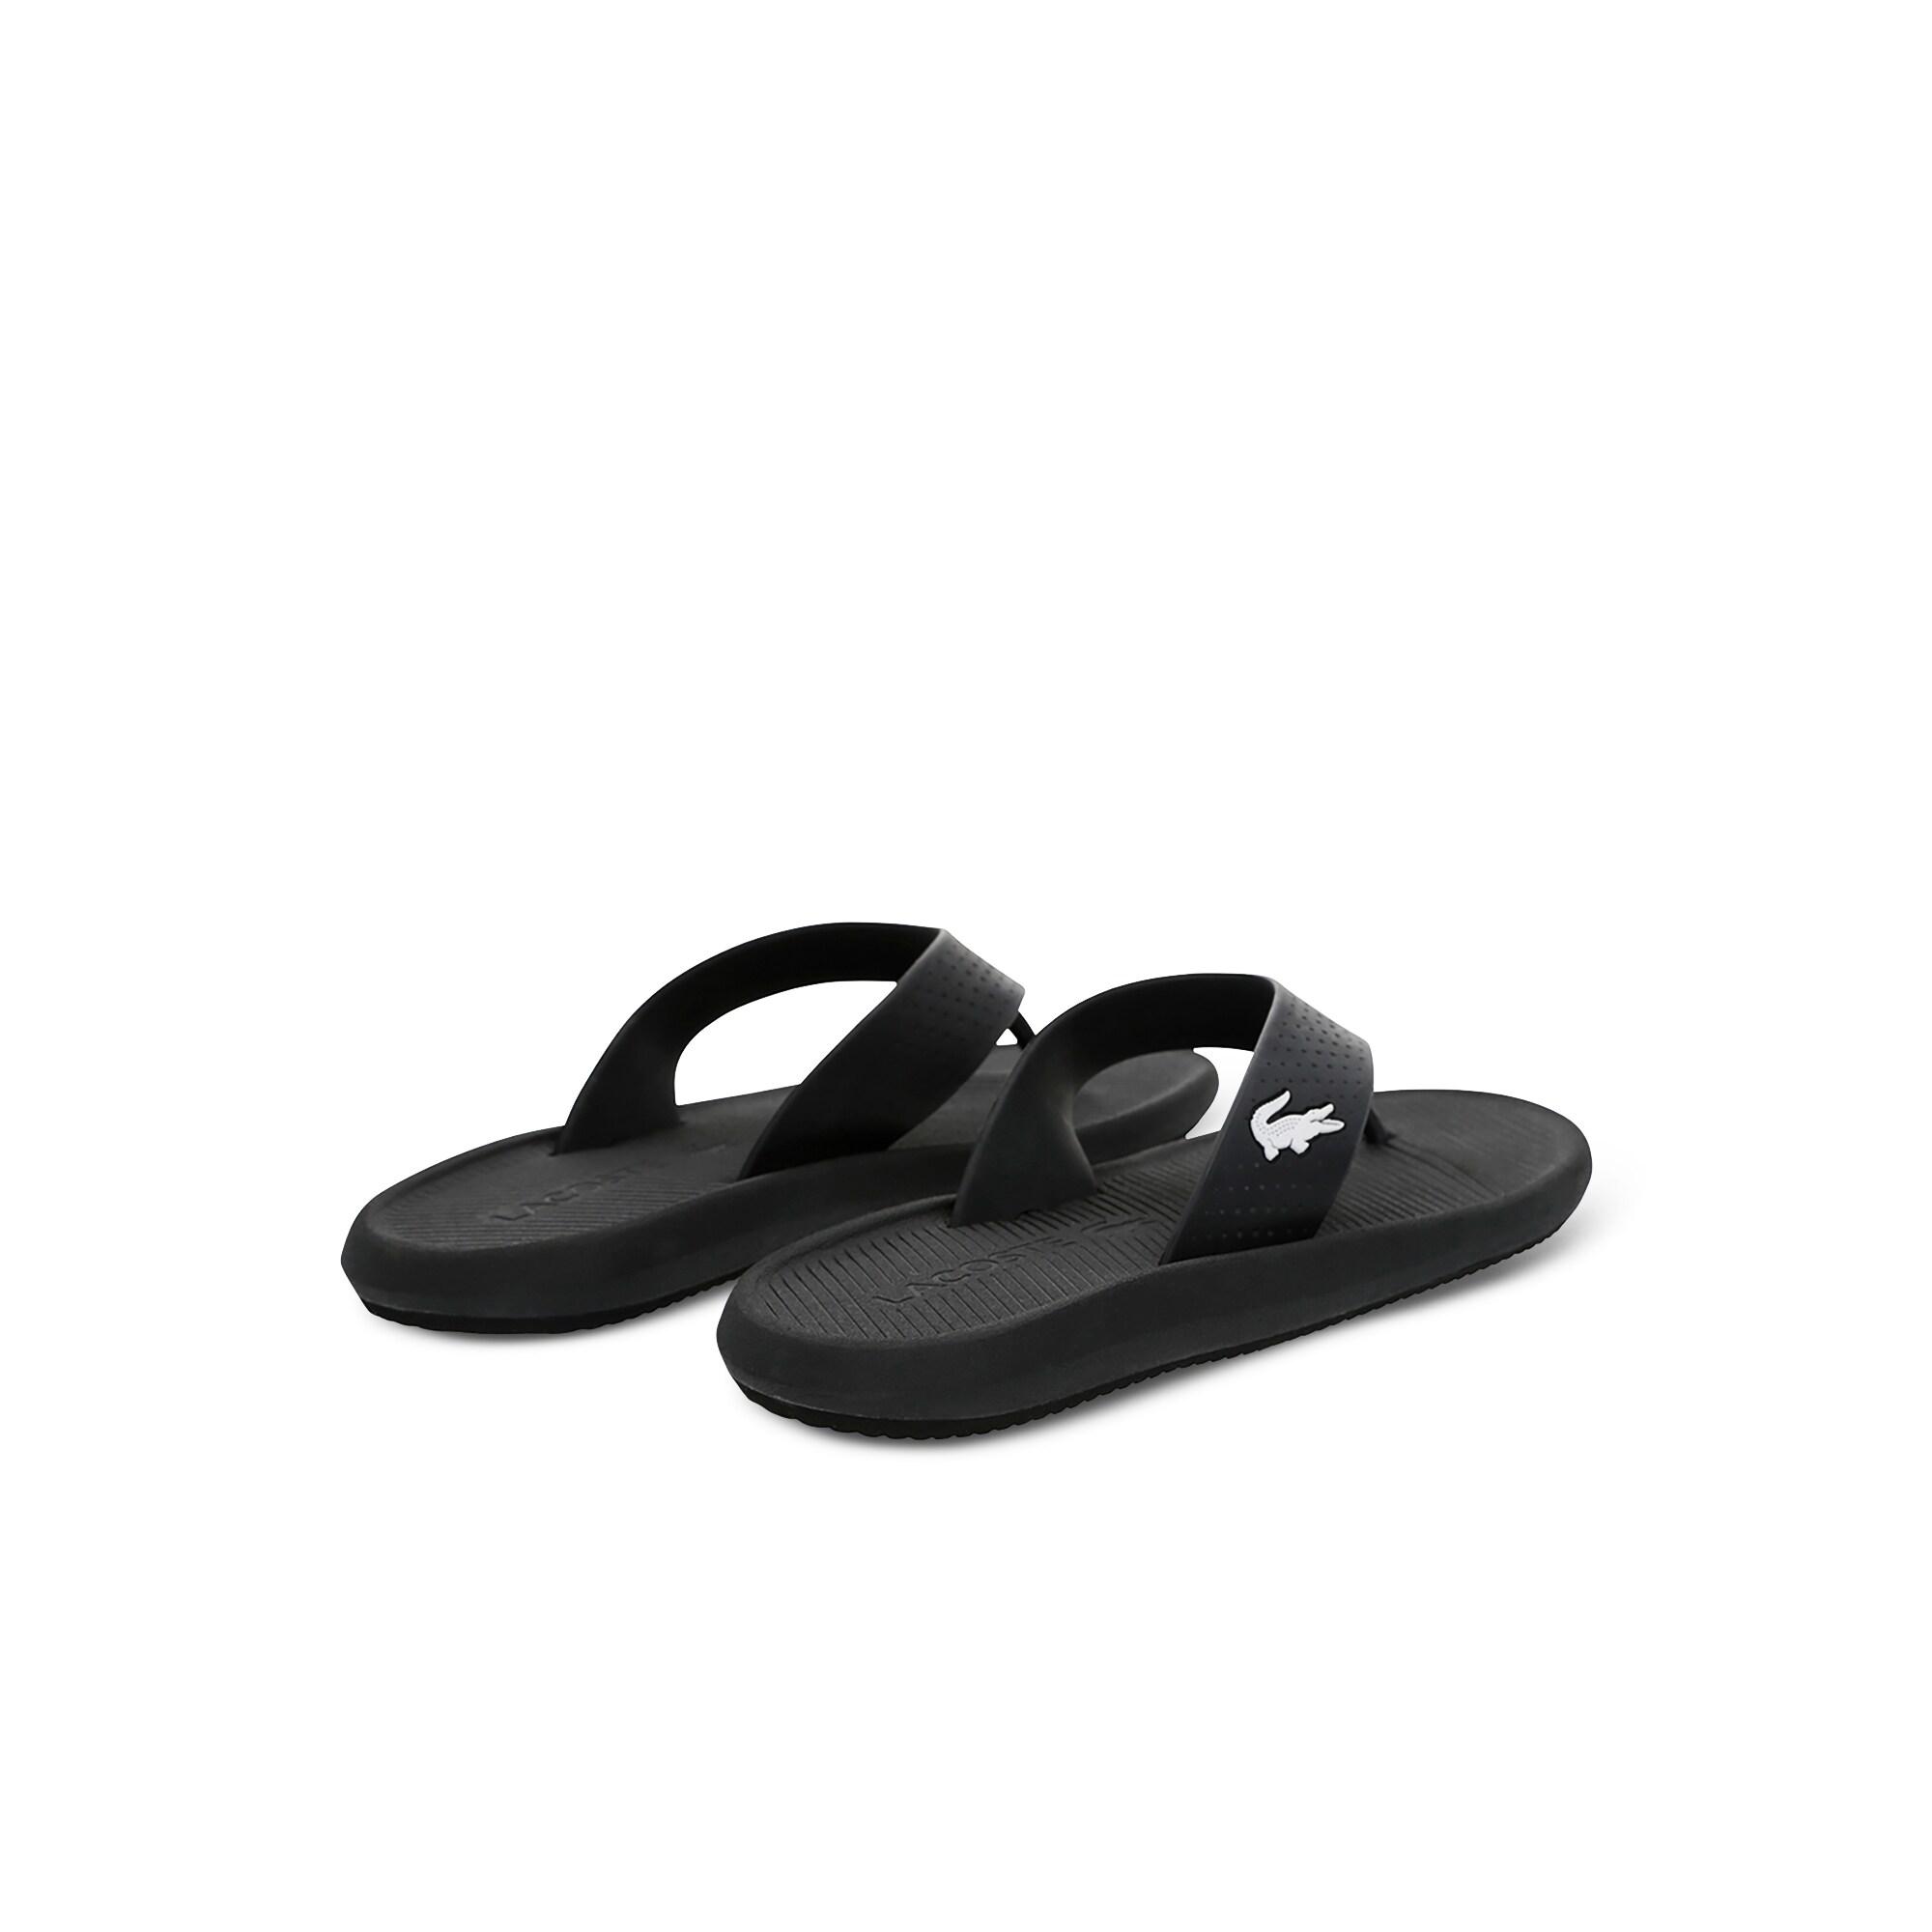 Lacoste Croco Sandal 219 1 Cma Erkek Siyah - Beyaz Terlik. 4